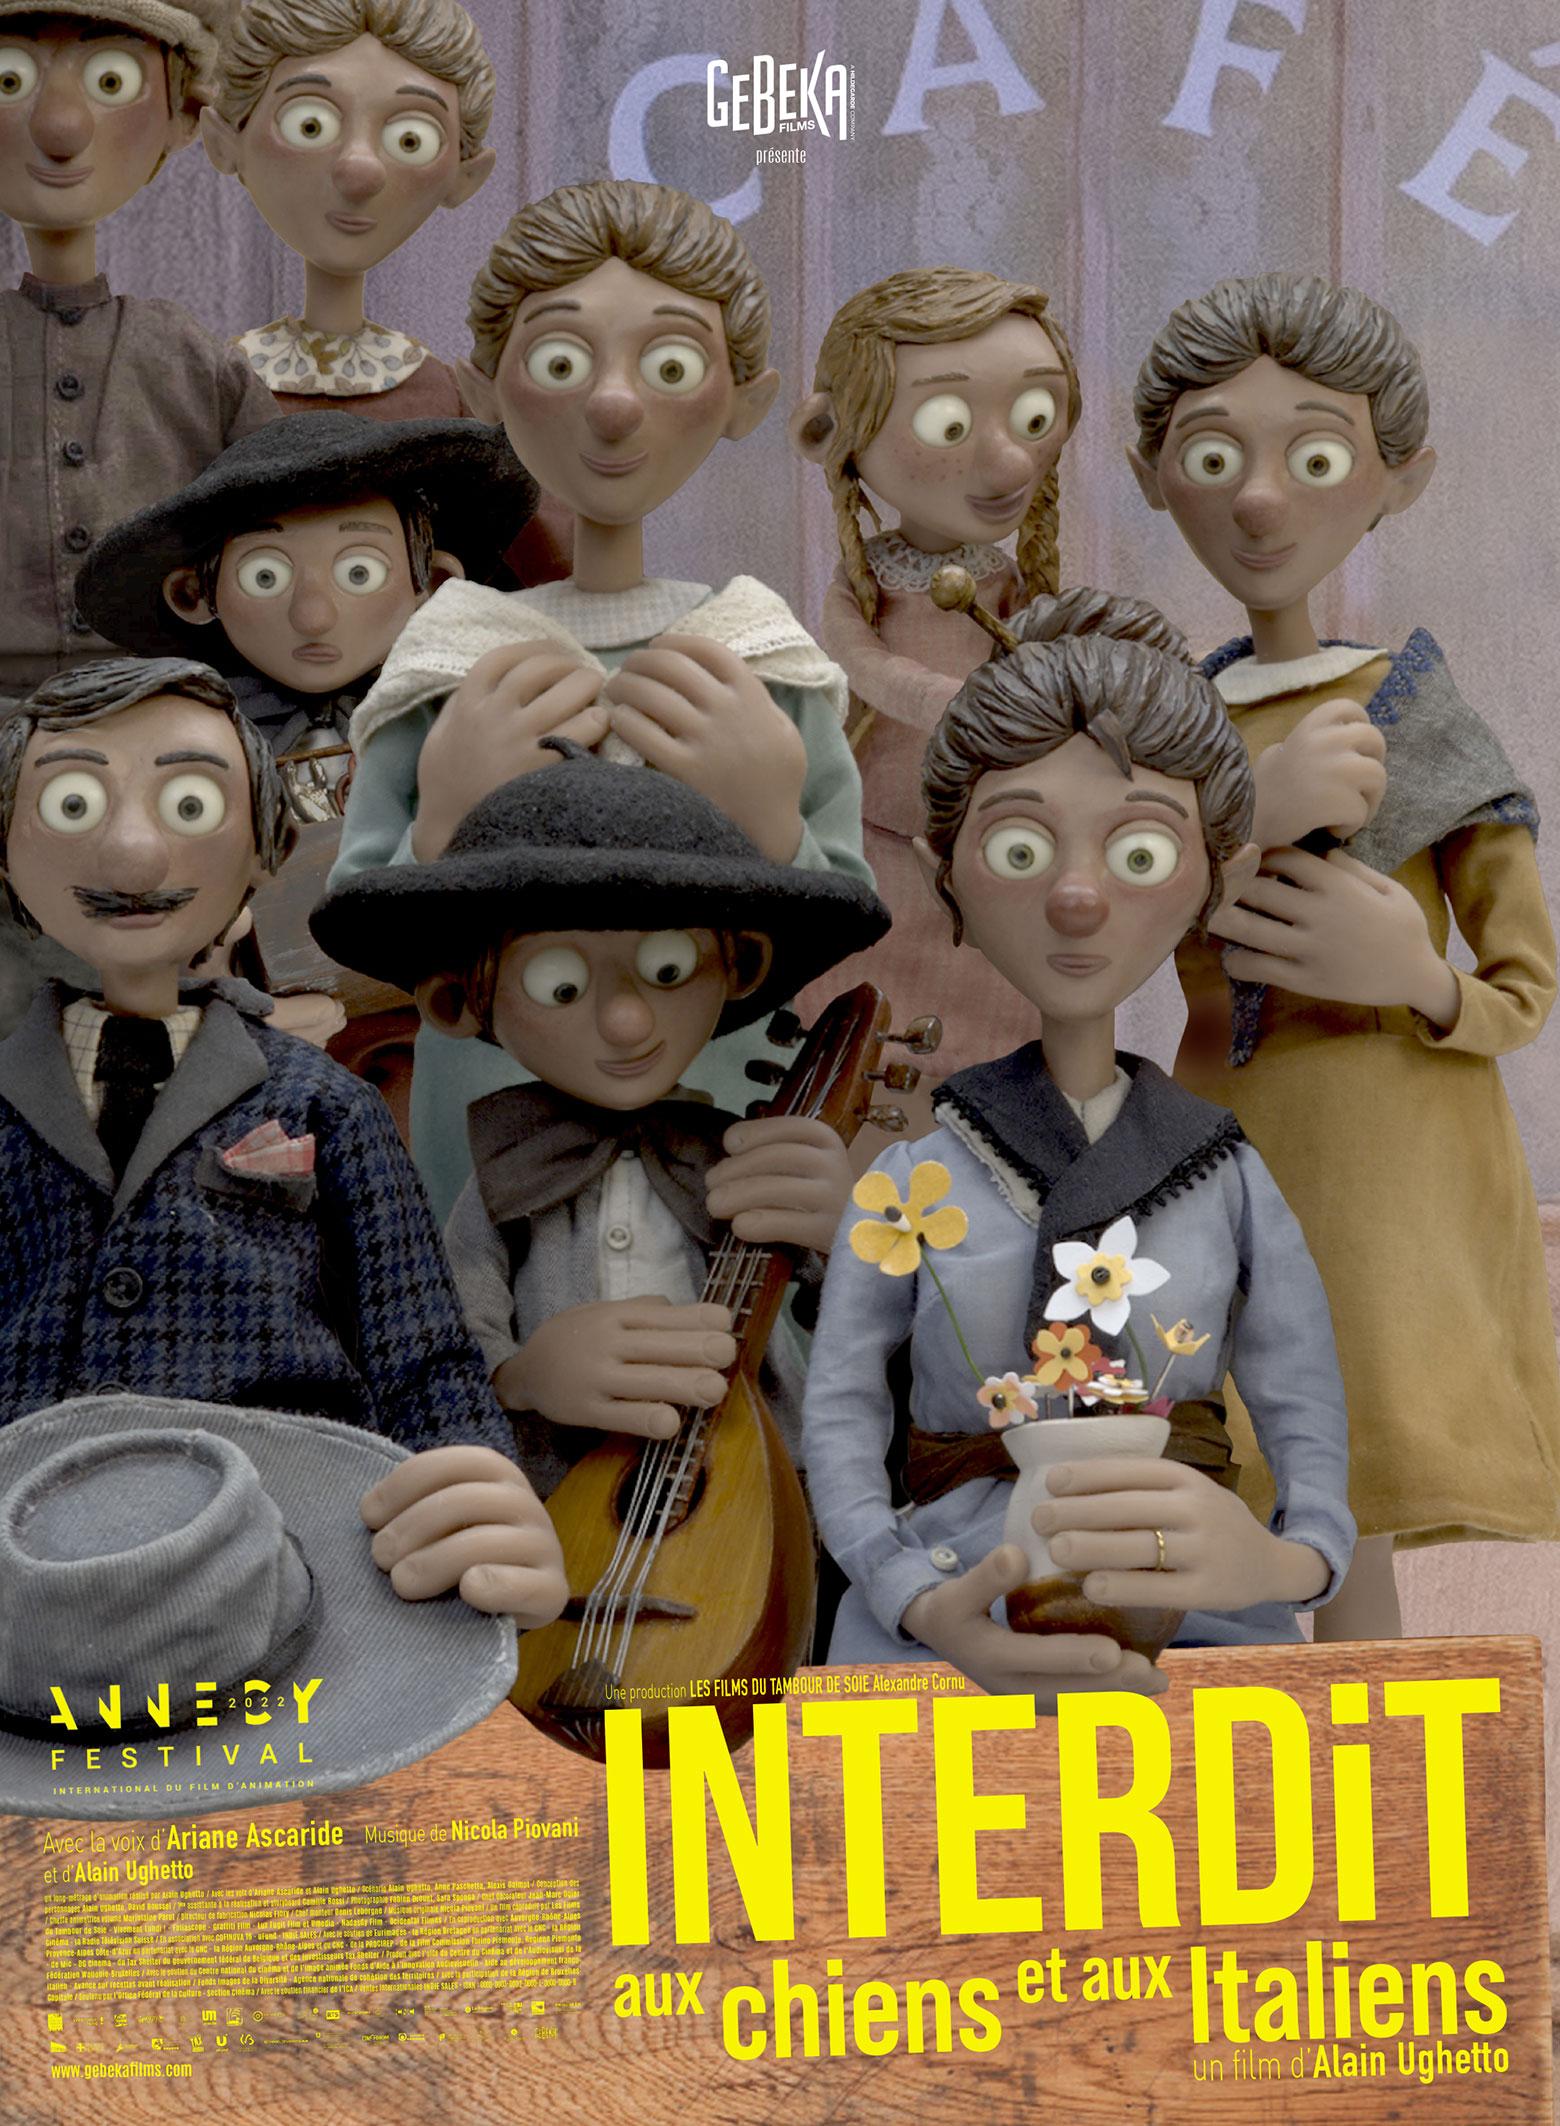 Affiche du film "Interdit aux chiens et aux Italiens" d'Alain Ughetto. [Gebeka Films]